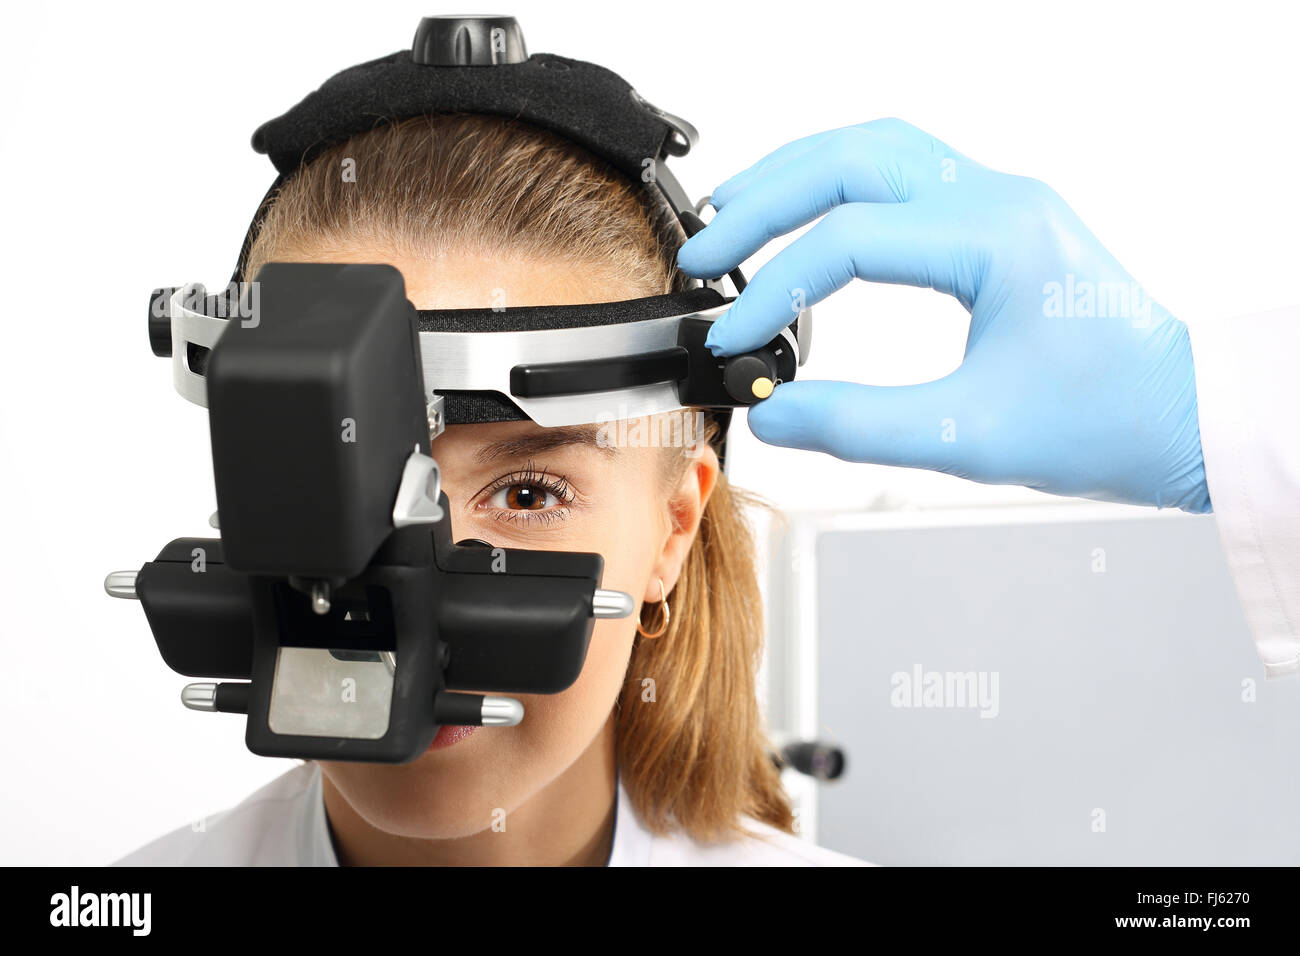 Augenarzt untersucht die Augen mit einem ophthalmologischen Gerät. Eine  Augenuntersuchung beim Augenarzt, Ophthalmoskop Stockfotografie - Alamy